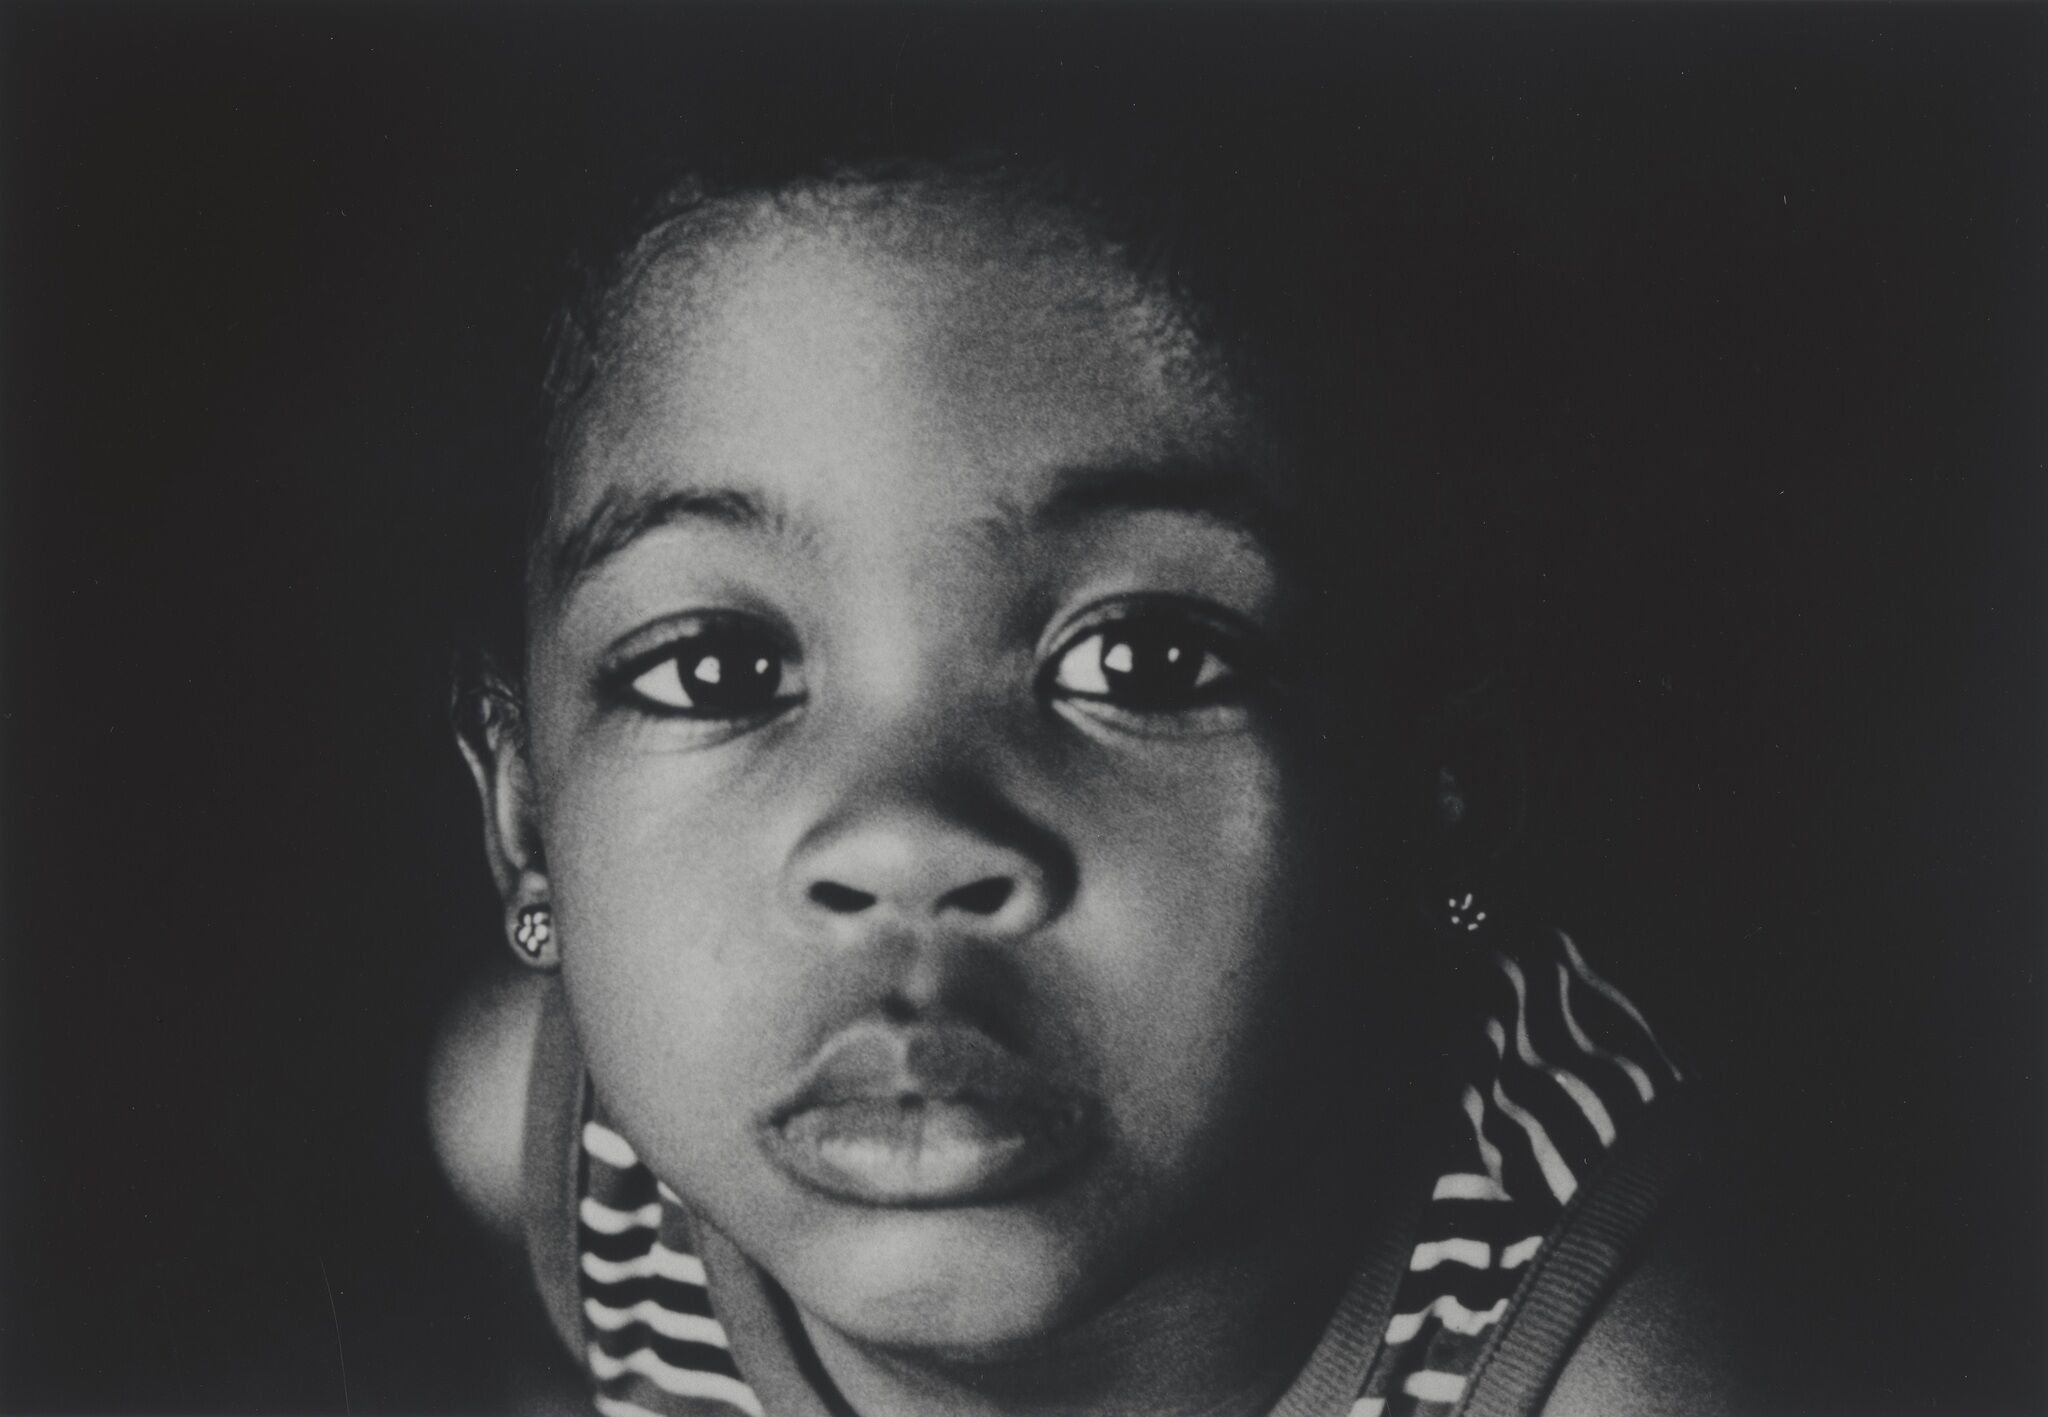 A close up portrait of a child's face.